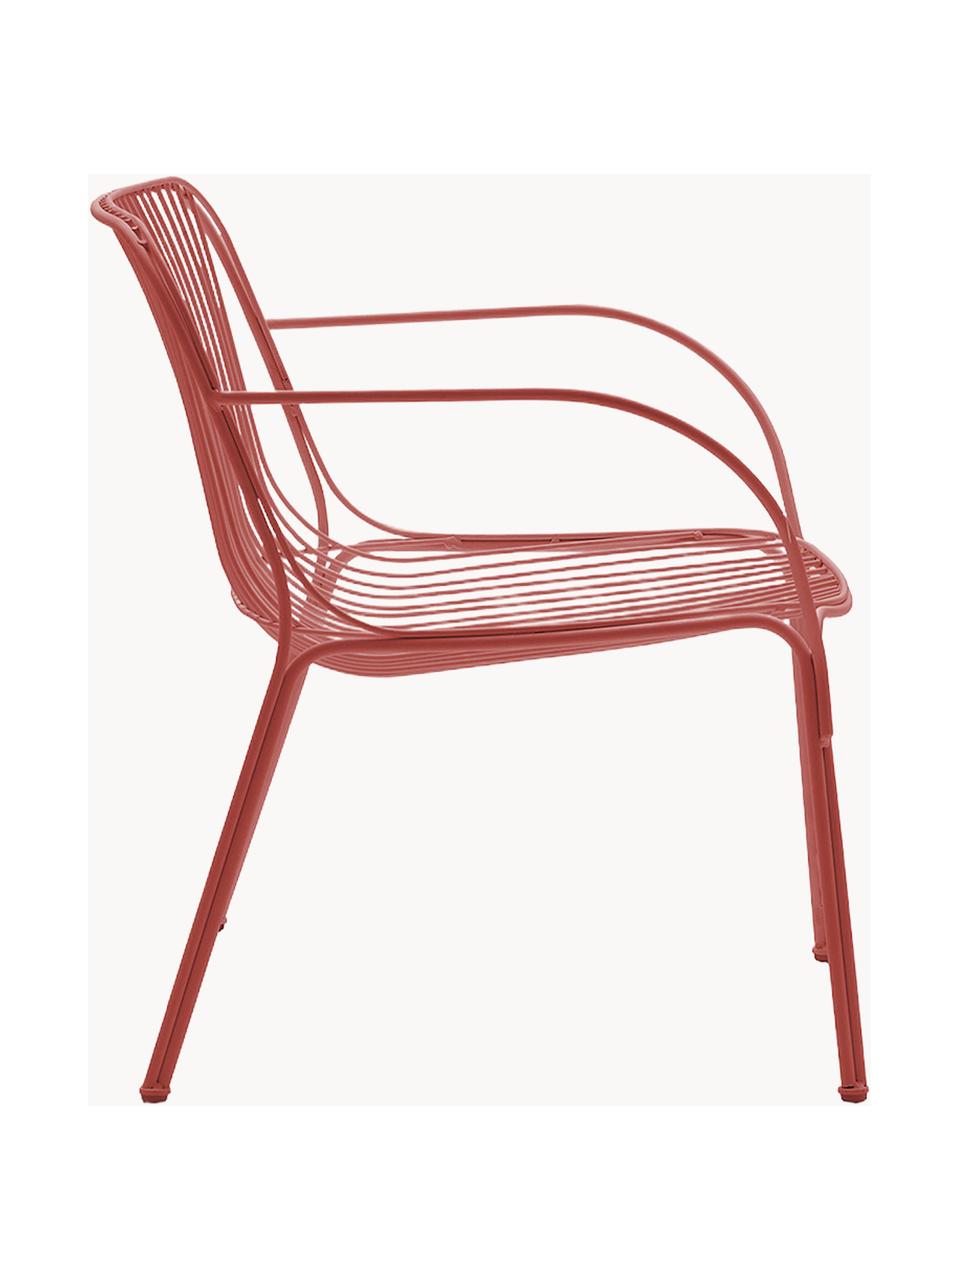 Fotel ogrodowy Hiray, Stal ocynkowana, lakierowana, Rdzawoczerwony, S 73 x G 65 cm